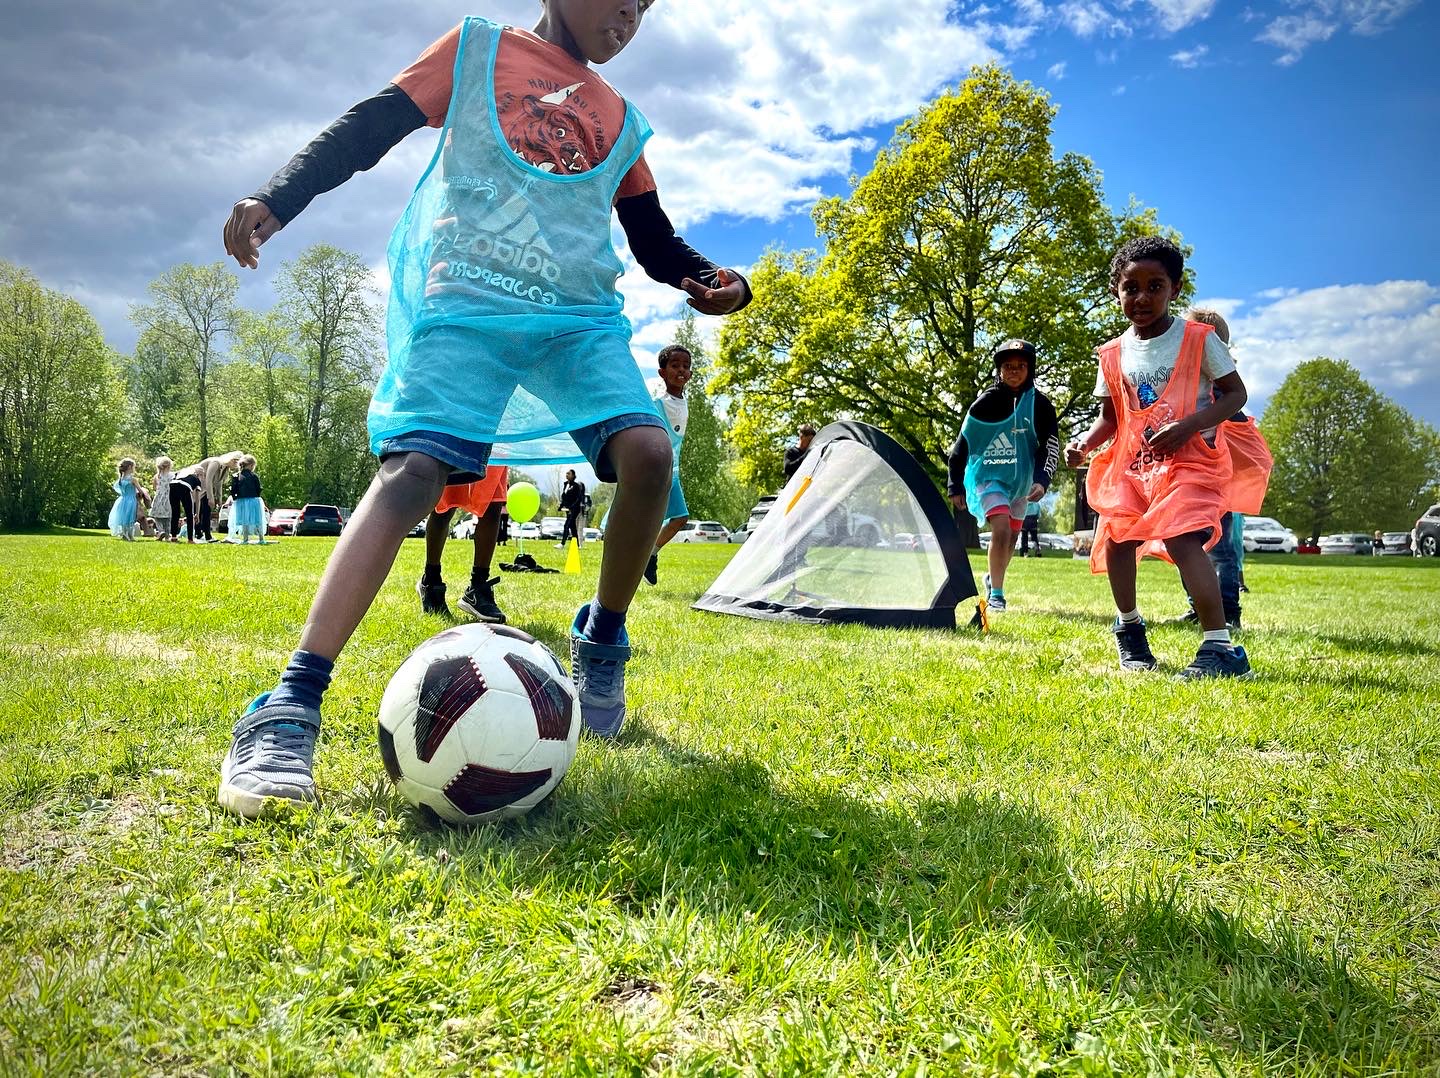 Barn i färgglada västar spelar fotboll på en gräsplan utomhus.